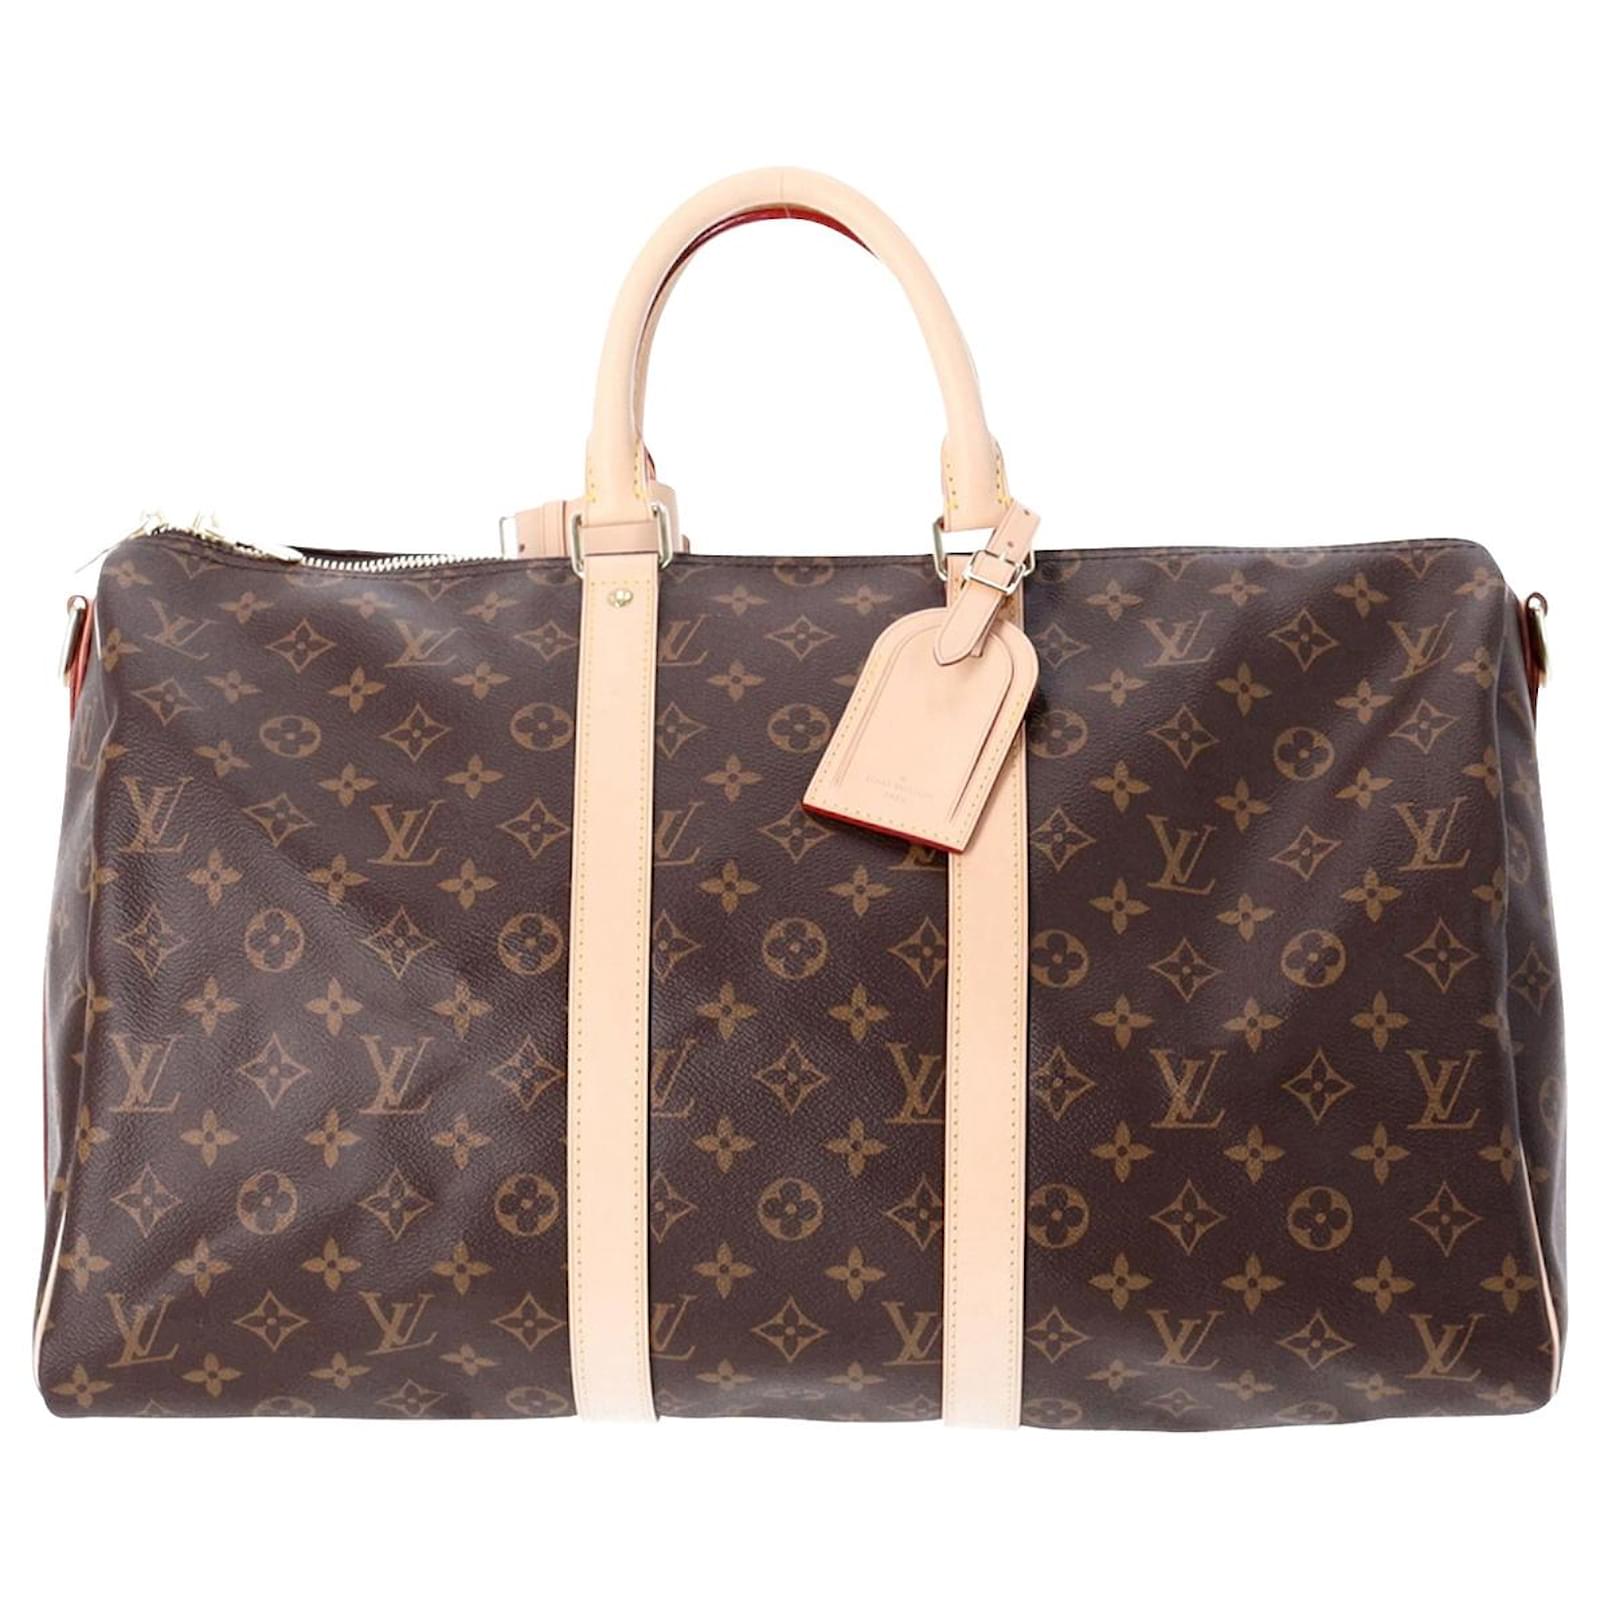 Louis Vuitton Keepall Bandouliere 45 Monogram Duffle Handbag Purse